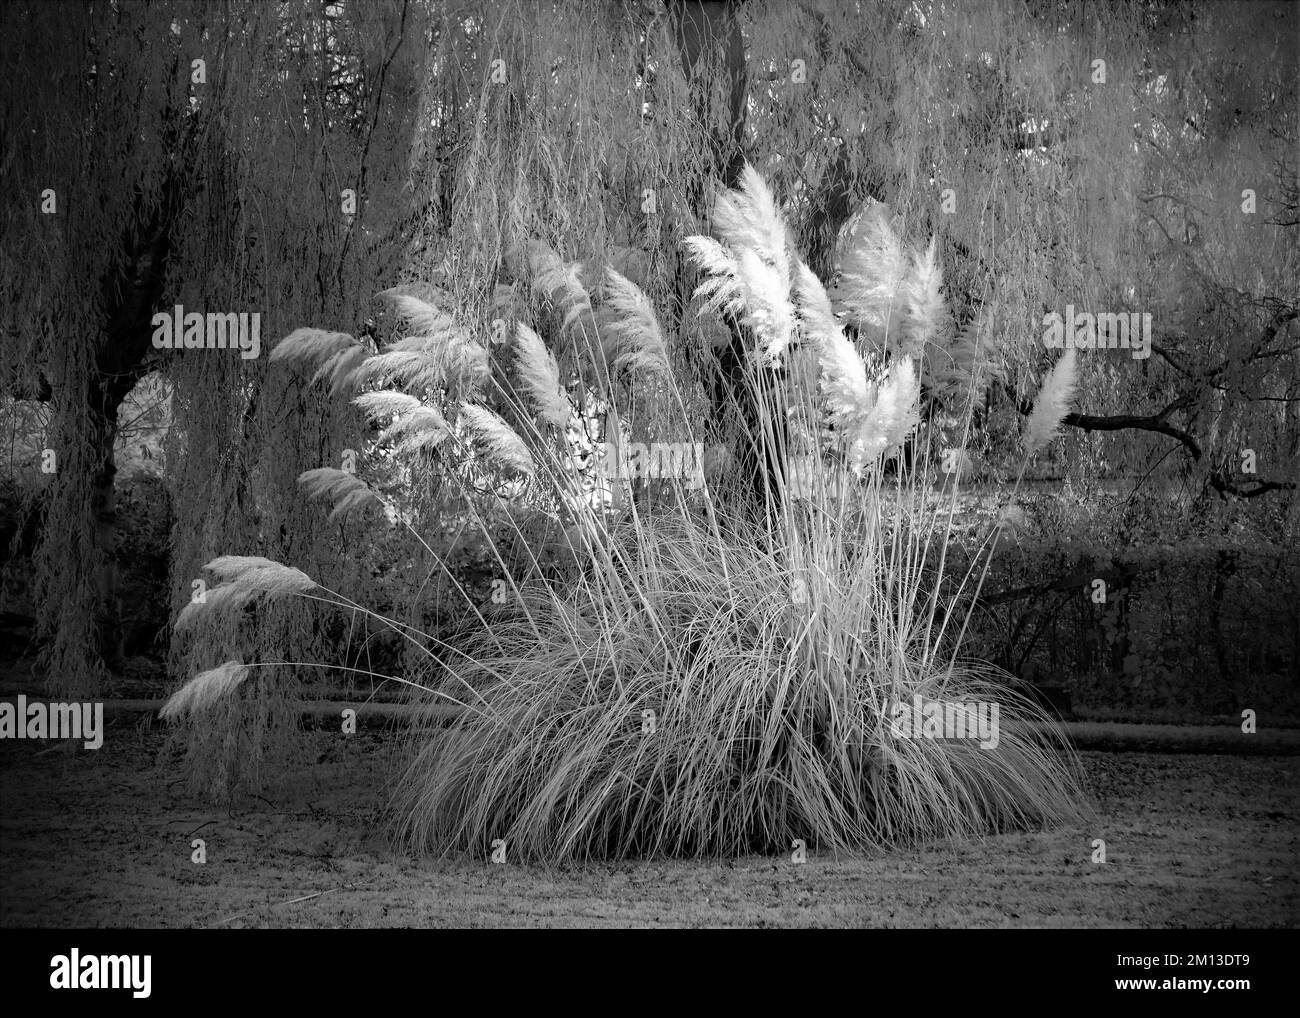 Fotografia in bianco e nero dei canali navigabili britannici, che mostra un'immagine a infrarossi con tonalità seppia con erba Pampas alta al bordo delle acque che porta un datato Foto Stock